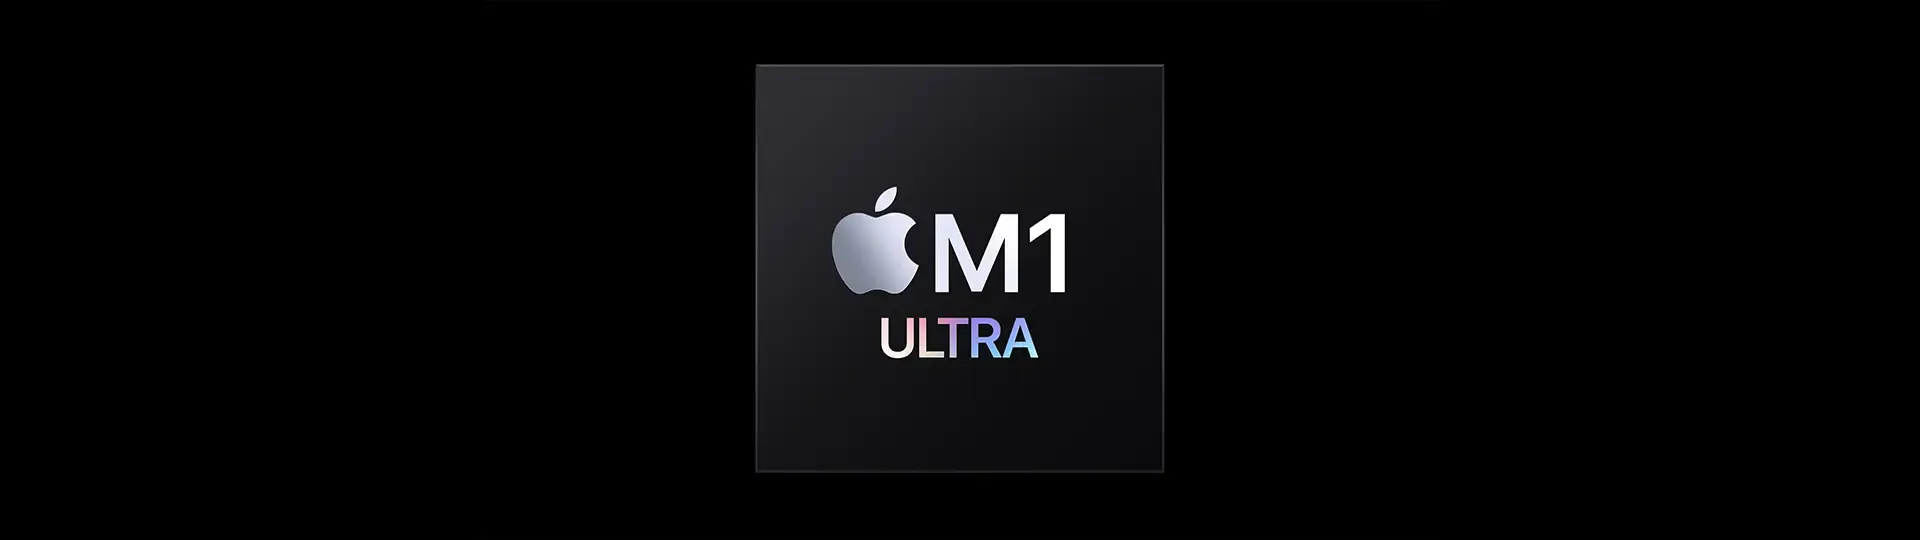 Capa do post: M1 Ultra é mesmo poderoso? Veja a análise do processador da Apple